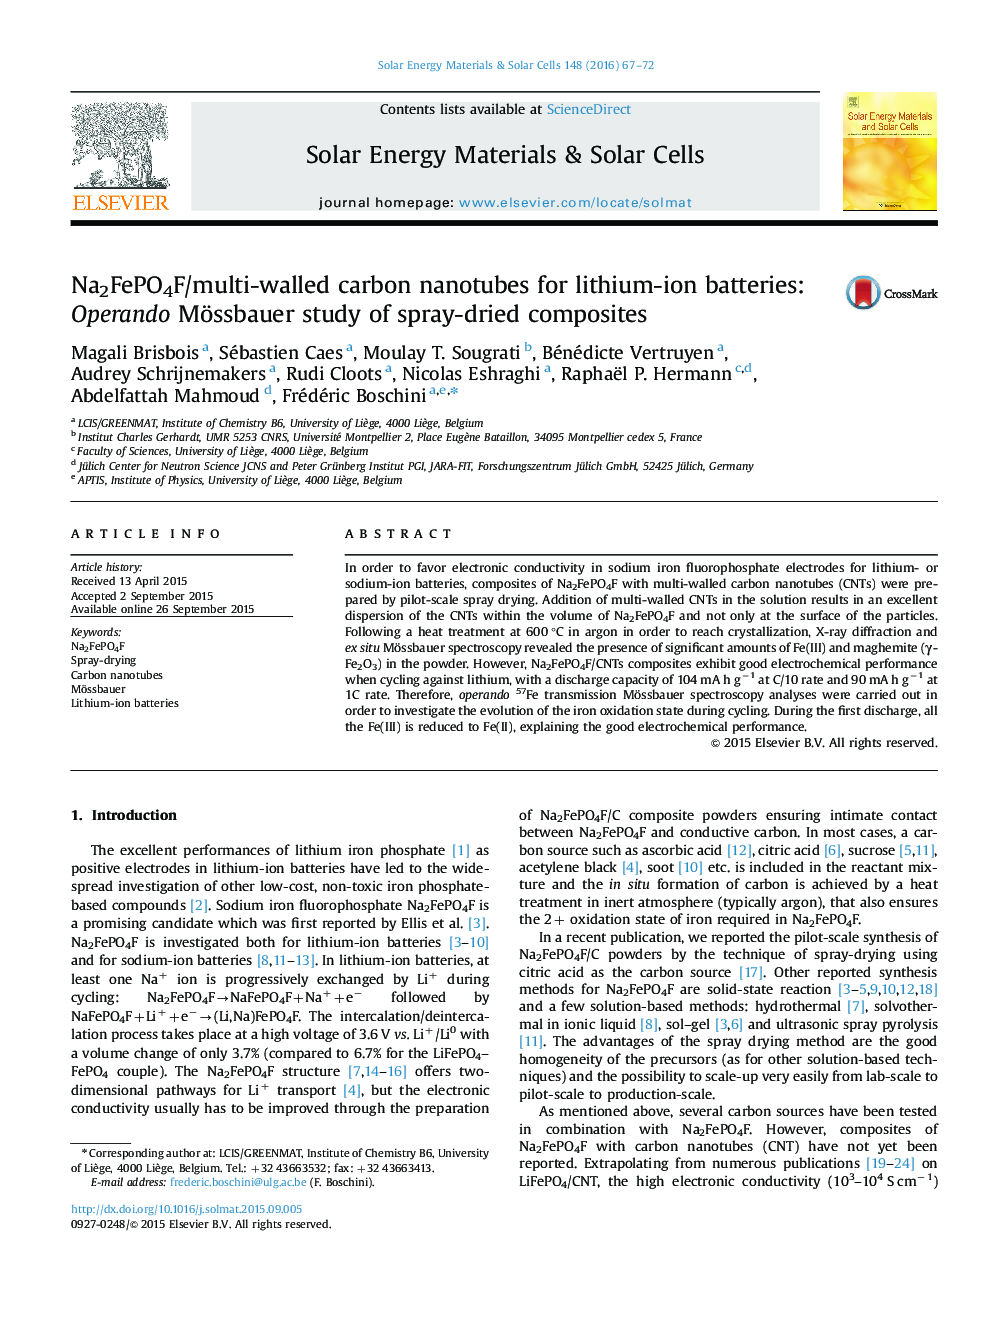 نانولوله های کربنی Na2FePO4F /چندجداره برای باتری های لیتیوم یون: مطالعه اپرانودو مسبوبور از ترکیبات خشک شده با اسپری